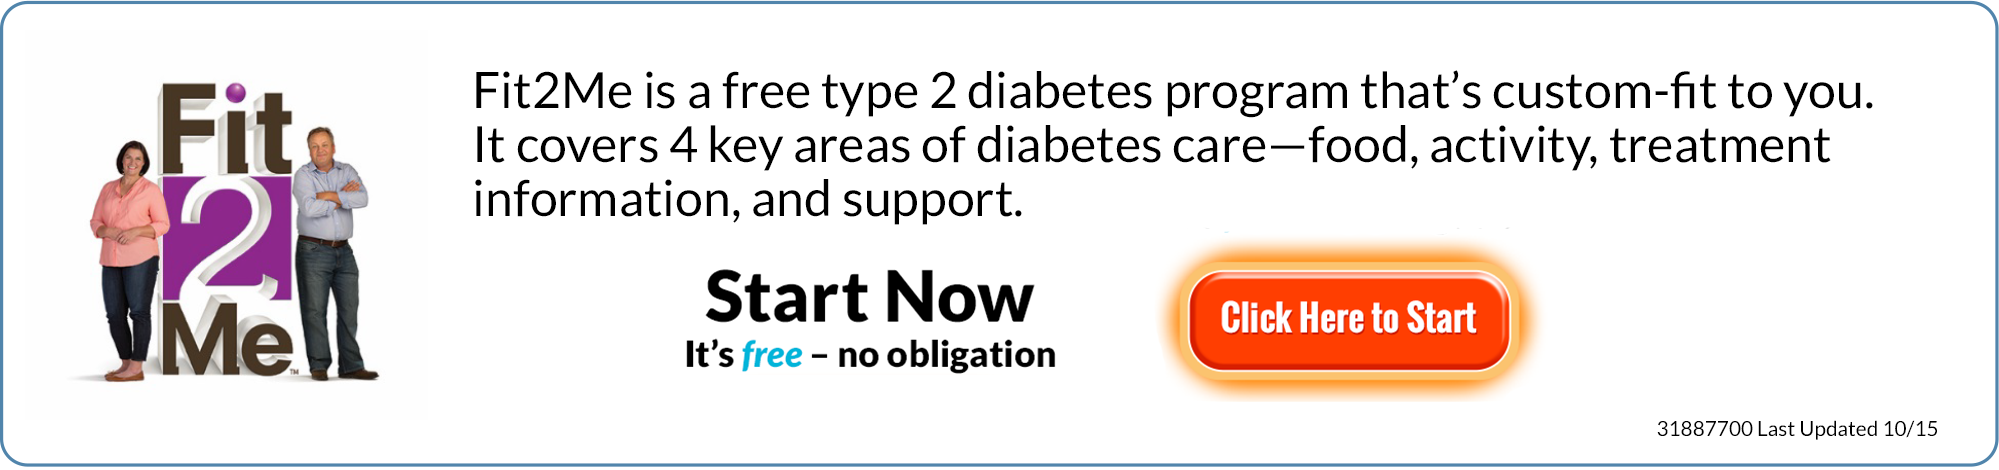 fit2me type 2 diabetes program naples fl